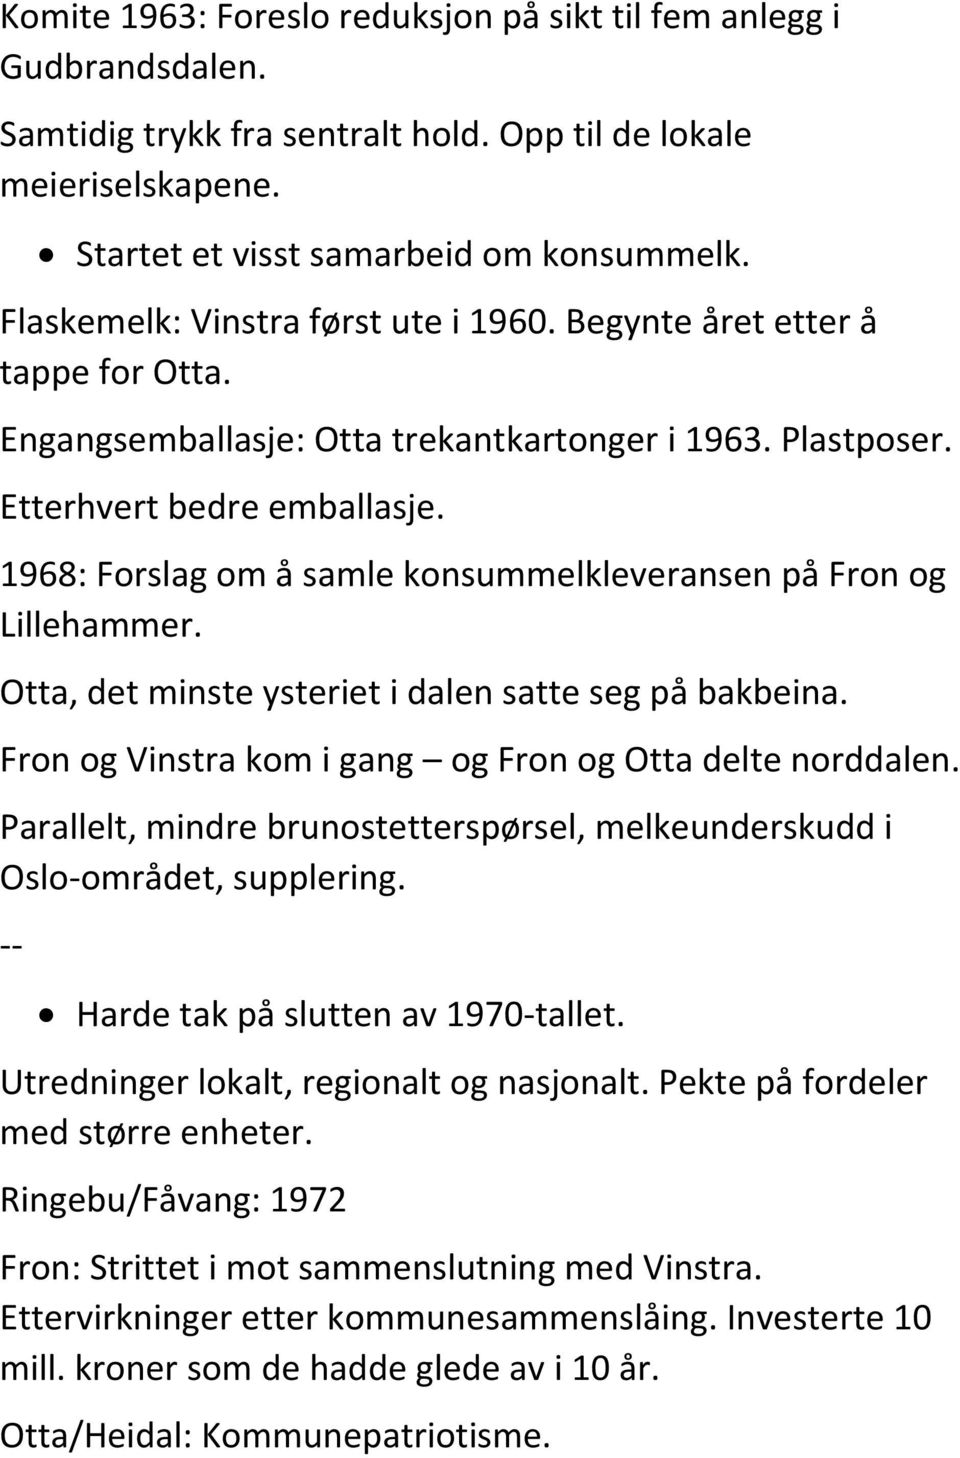 1968: Forslag om å samle konsummelkleveransen på Fron og Lillehammer. Otta, det minste ysteriet i dalen satte seg på bakbeina. Fron og Vinstra kom i gang og Fron og Otta delte norddalen.